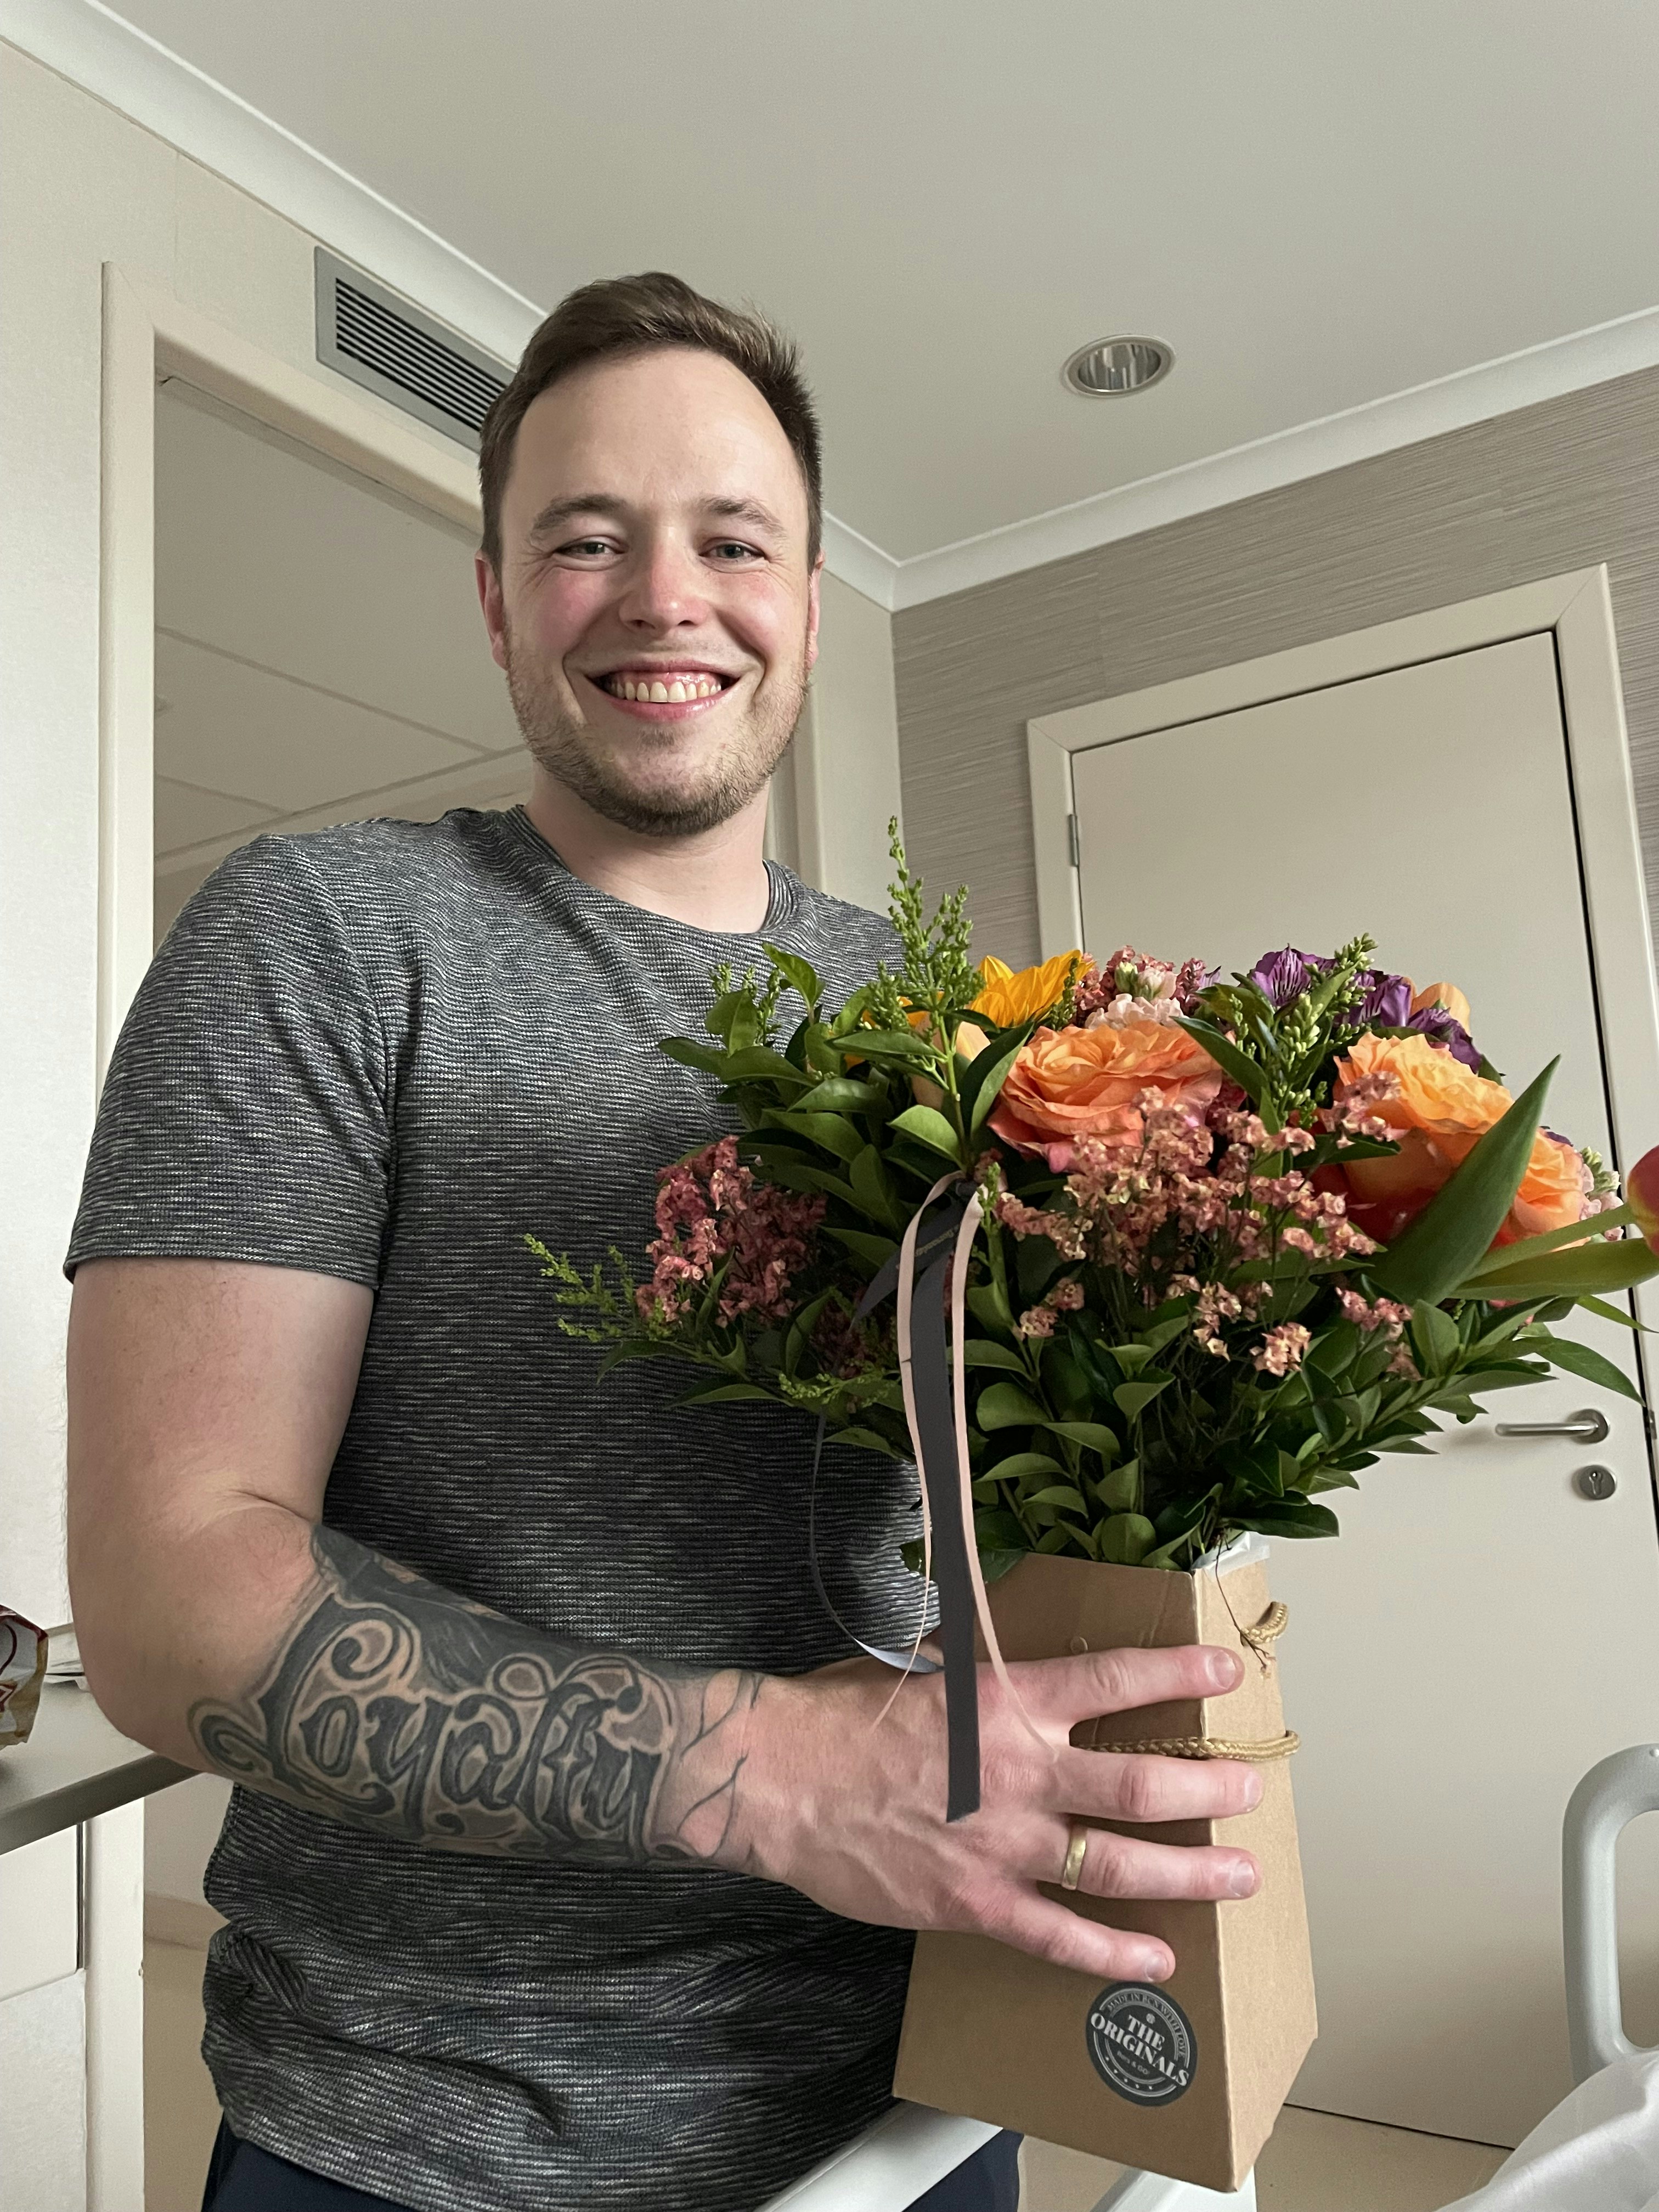 Jonas havde indkøbt en smuk buket blomster til Cecilie, efter operationen var vel overstået.

&nbsp;
